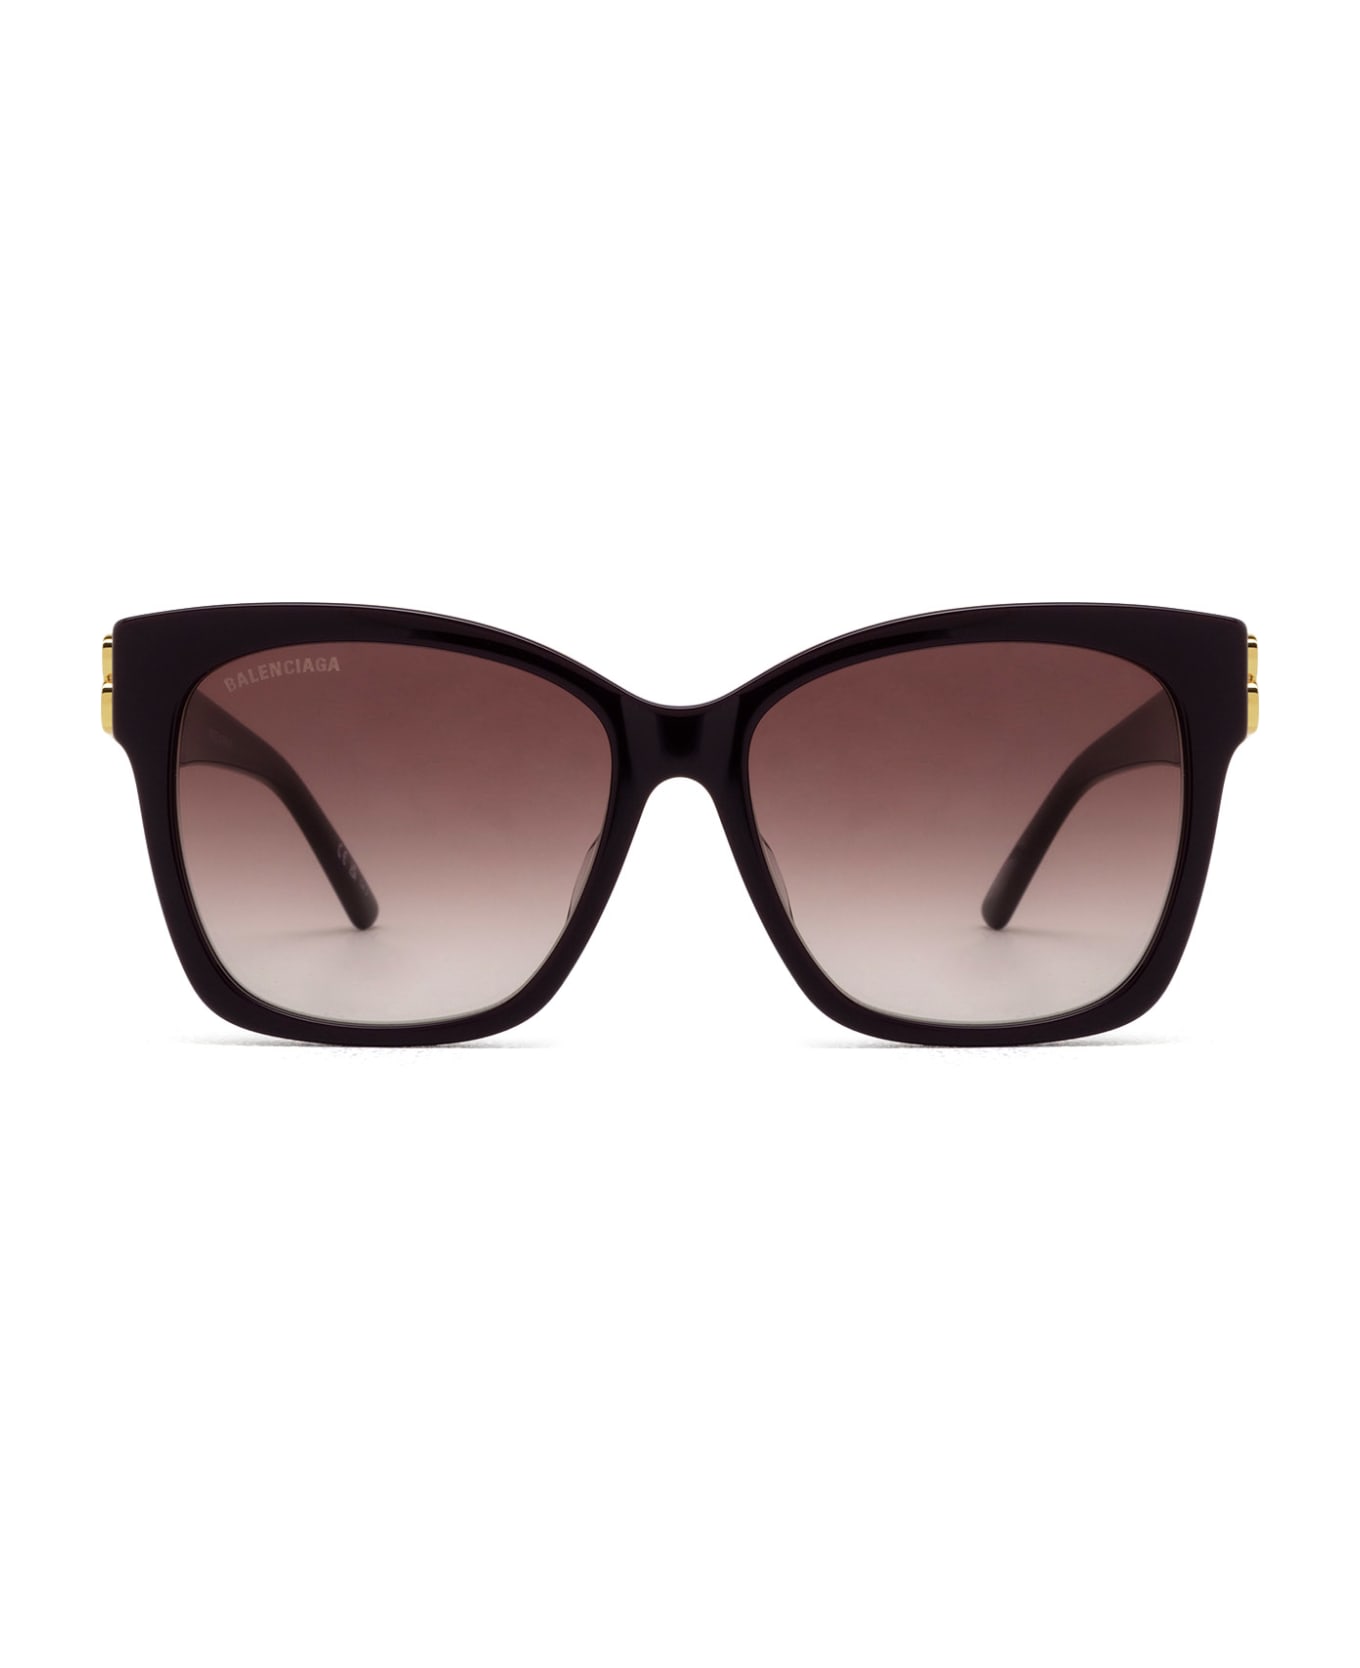 Balenciaga Eyewear Bb0102sa Violet Sunglasses - Violet